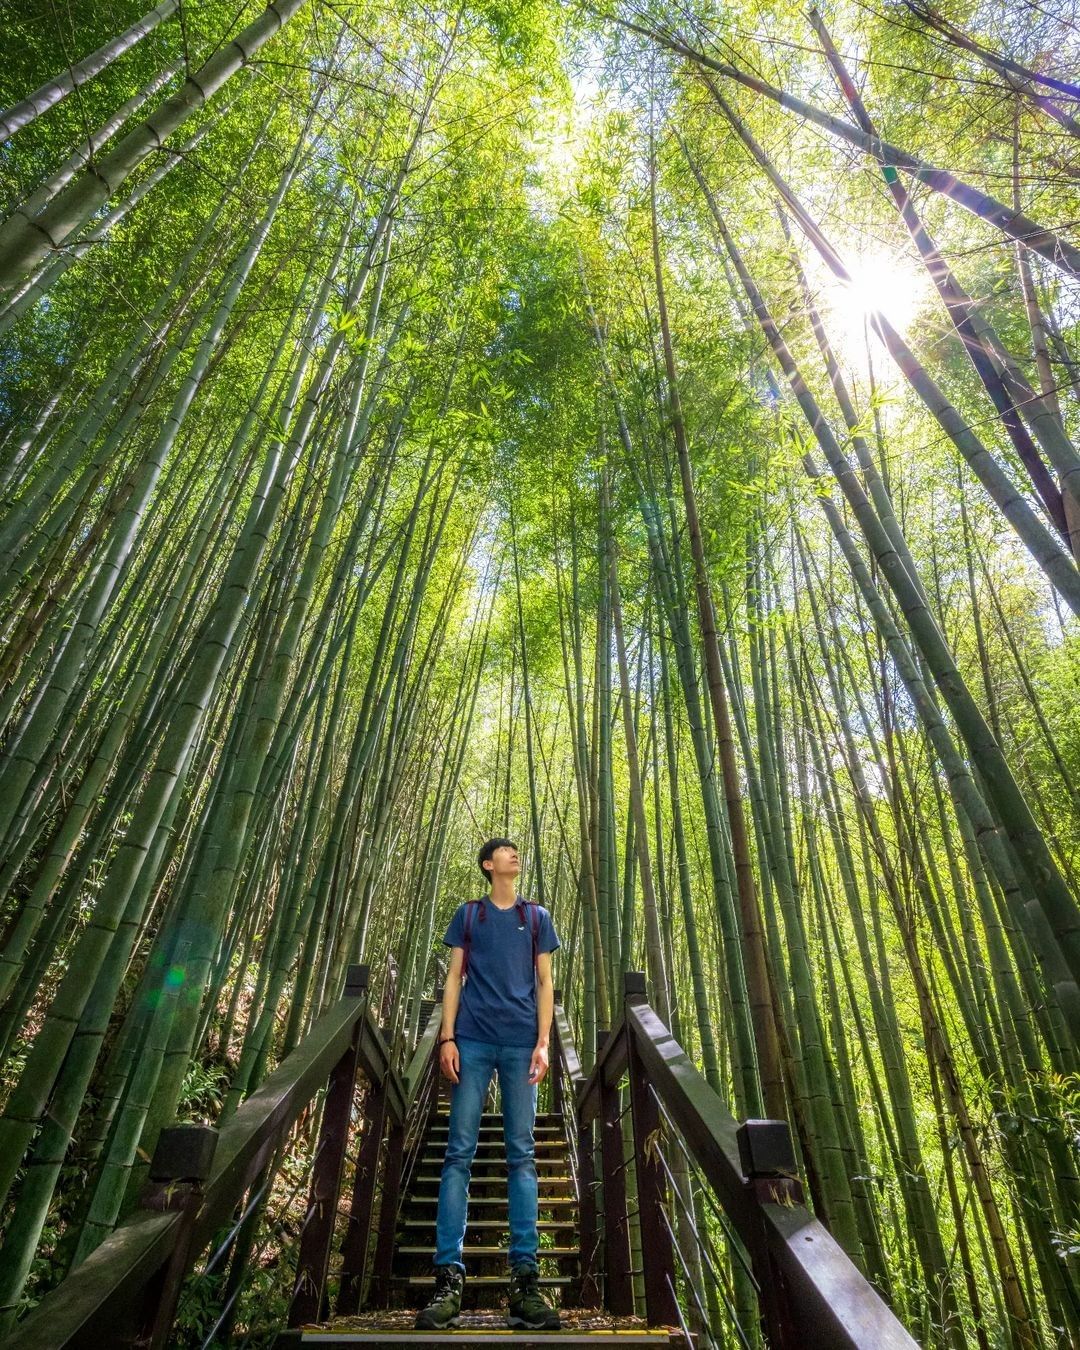 小編在粉專上分享4張竹林照片讓大家猜猜分別是哪些步道不太容易呀照片授權感謝 @yuchang_0217 -⠀歡迎在您的貼文 #tr...